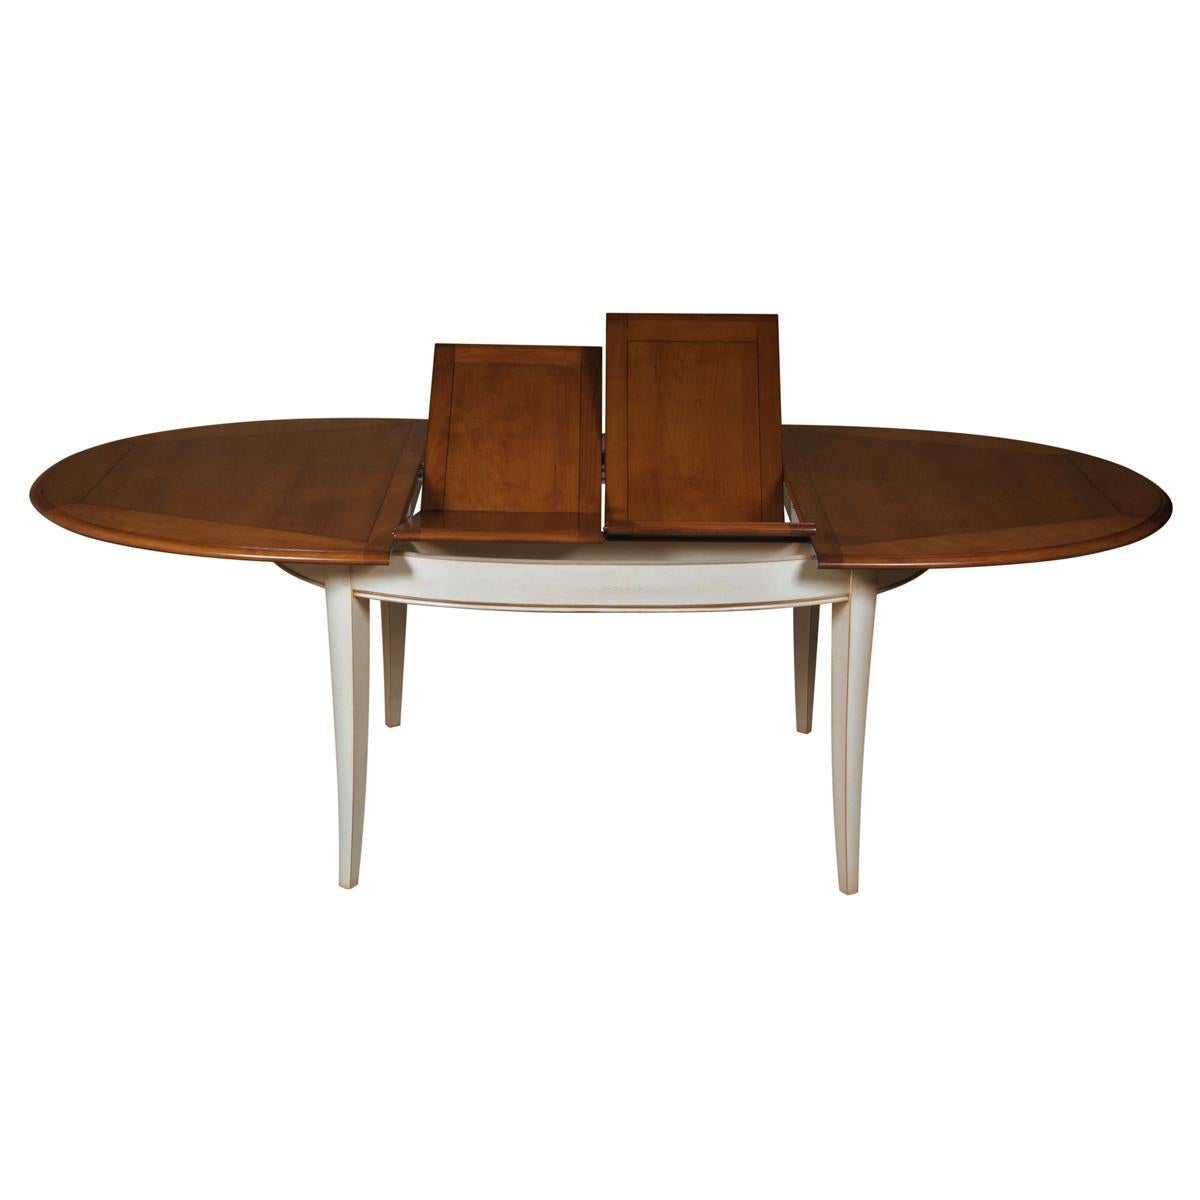 Dieser ausziehbare ovale Tisch mit 2 Flügeln ist typisch für klassische französische Möbelstücke und gehört zu unserer TRADITION-Kollektion, die die zeitlosen Klassiker mit dem Charme der französischen Landschaft aufgreift.

Die Pilaster, die